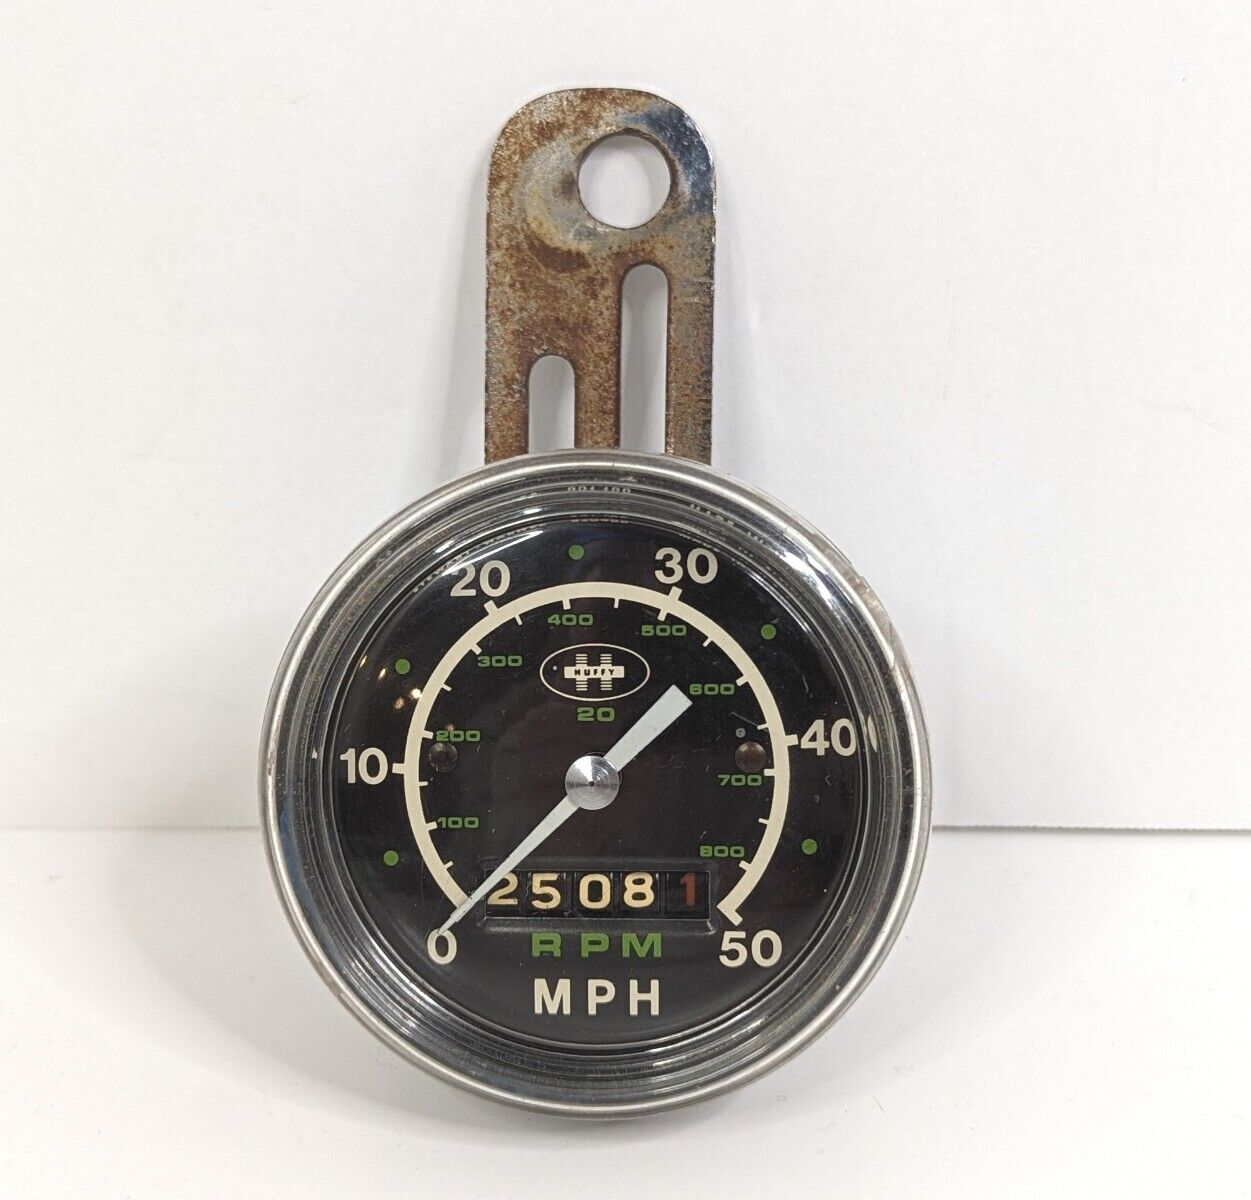 Huffy Bike Speedometer Gauge 0-50 Mph 0-800 RPM Stewart Warner #826488 3\